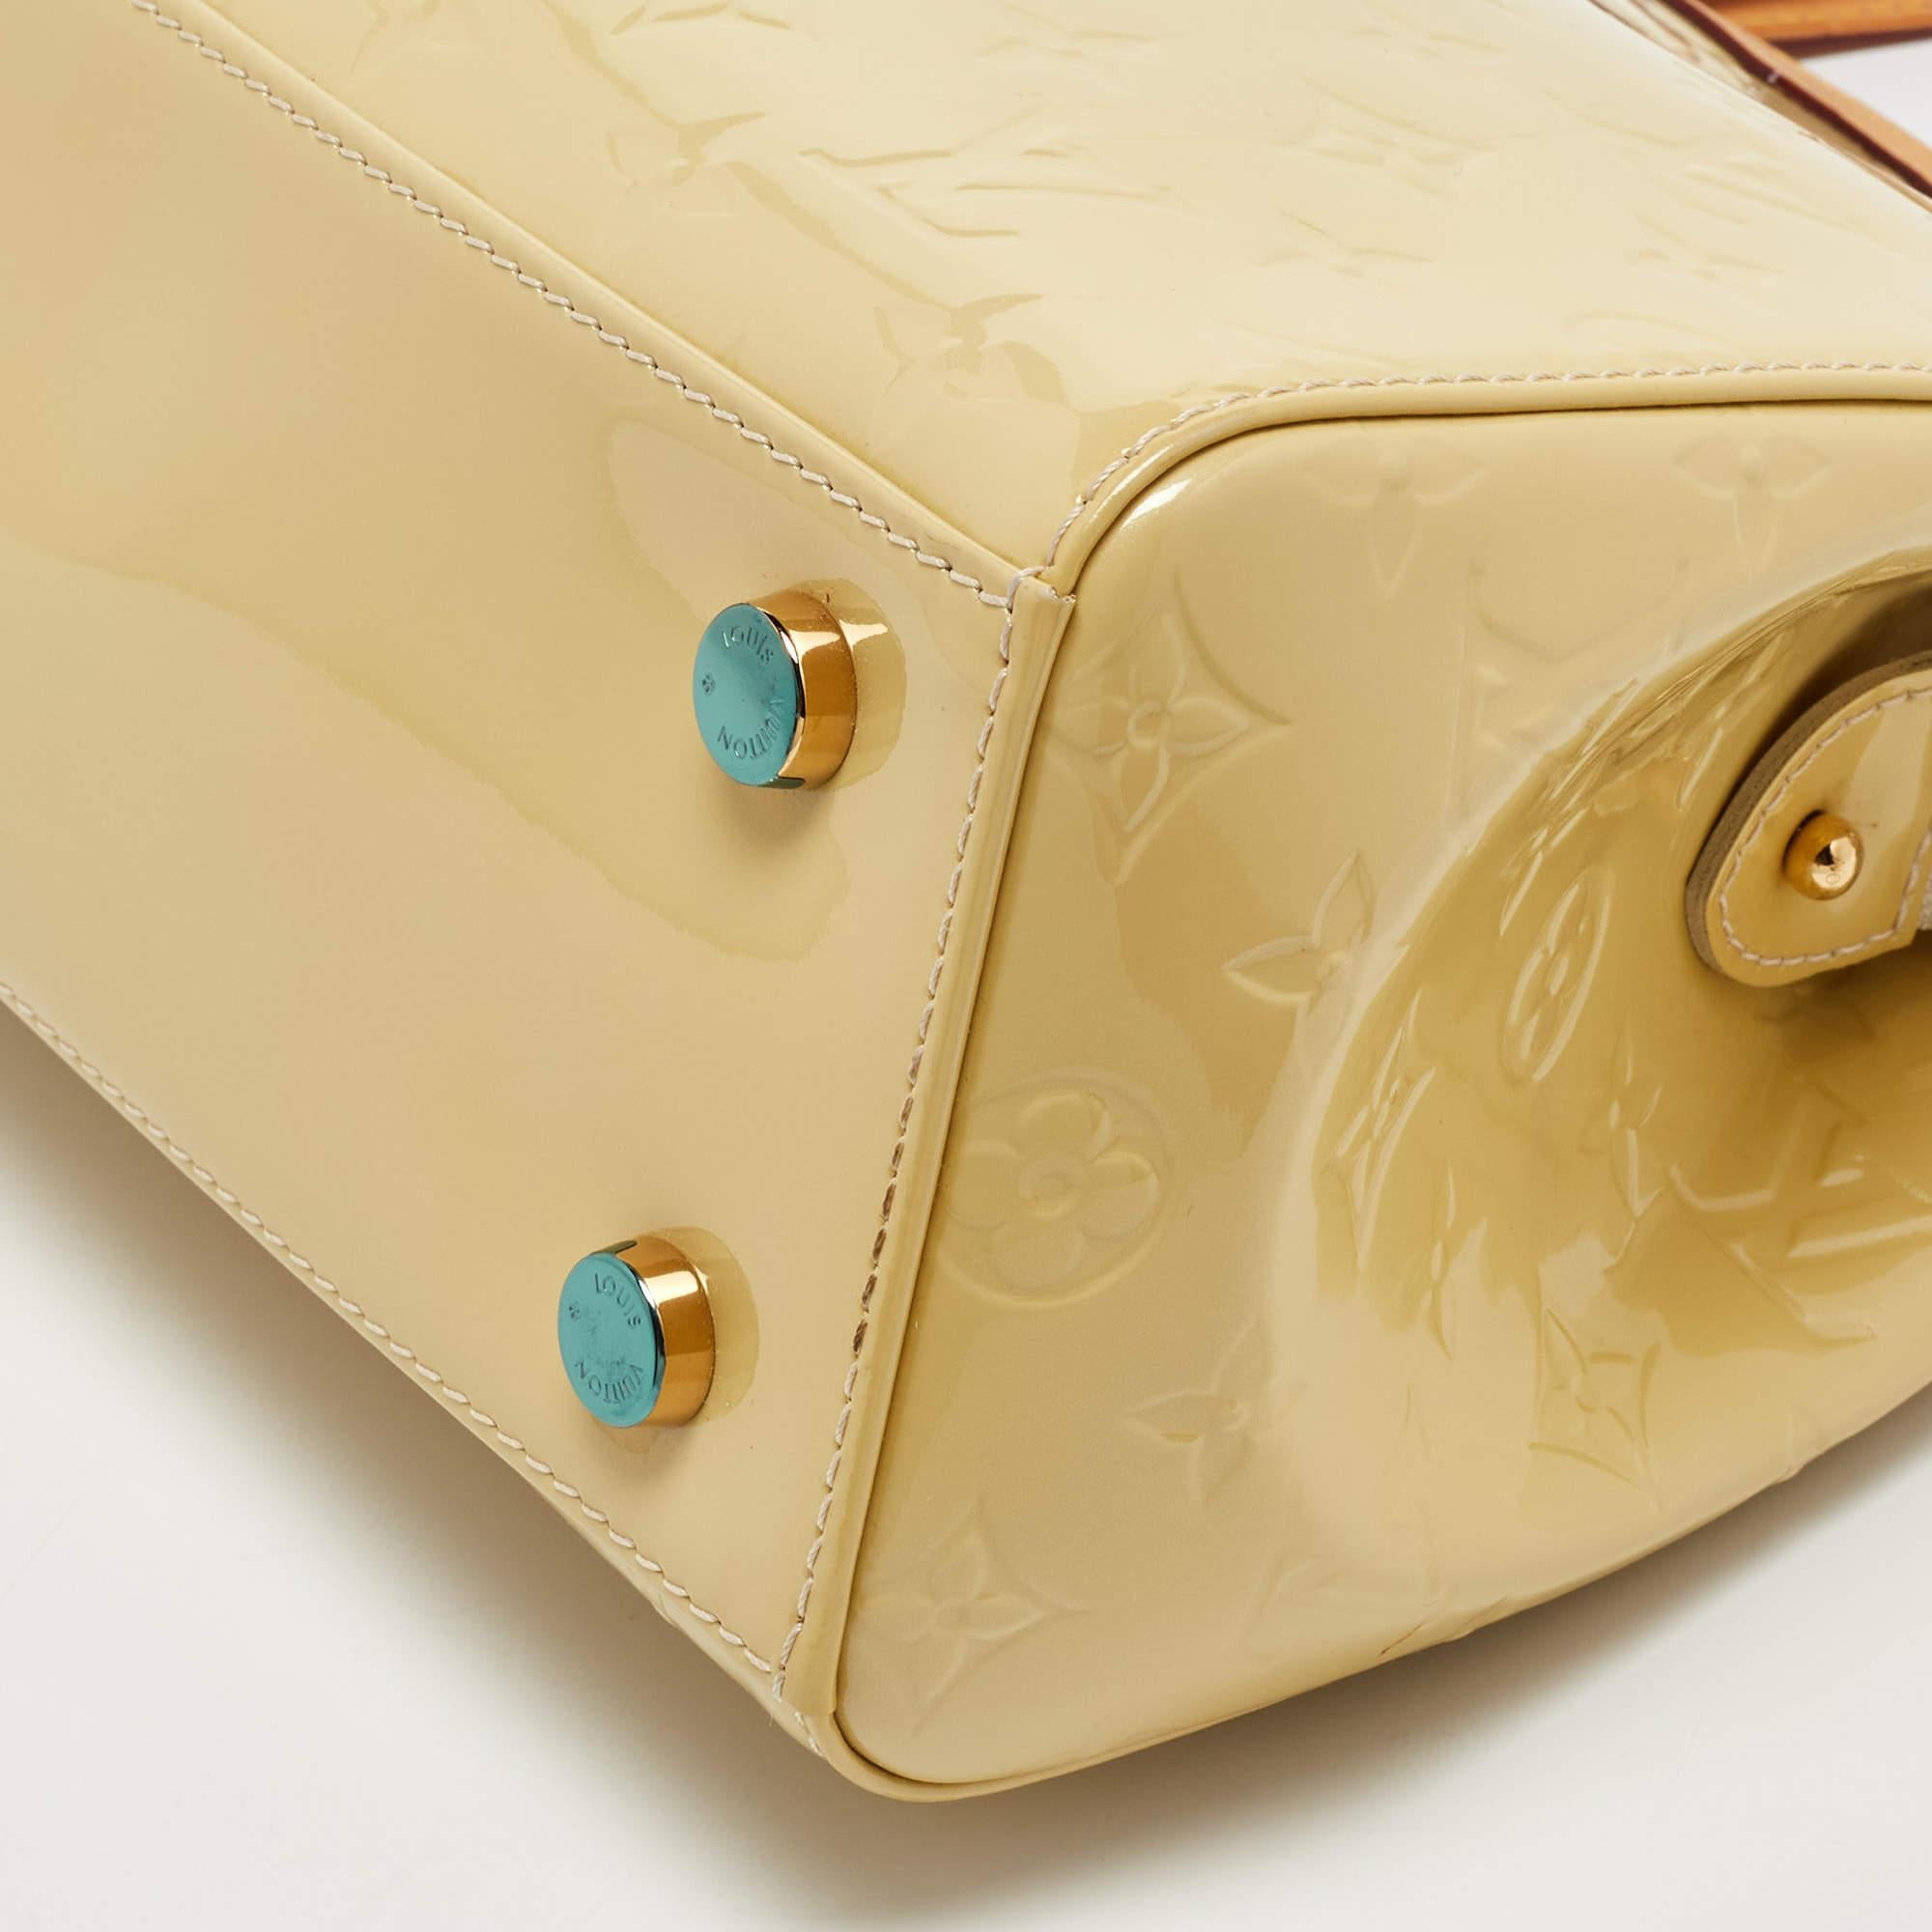 Louis Vuitton Citrine Monogram Vernis Brea MM Bag For Sale 10